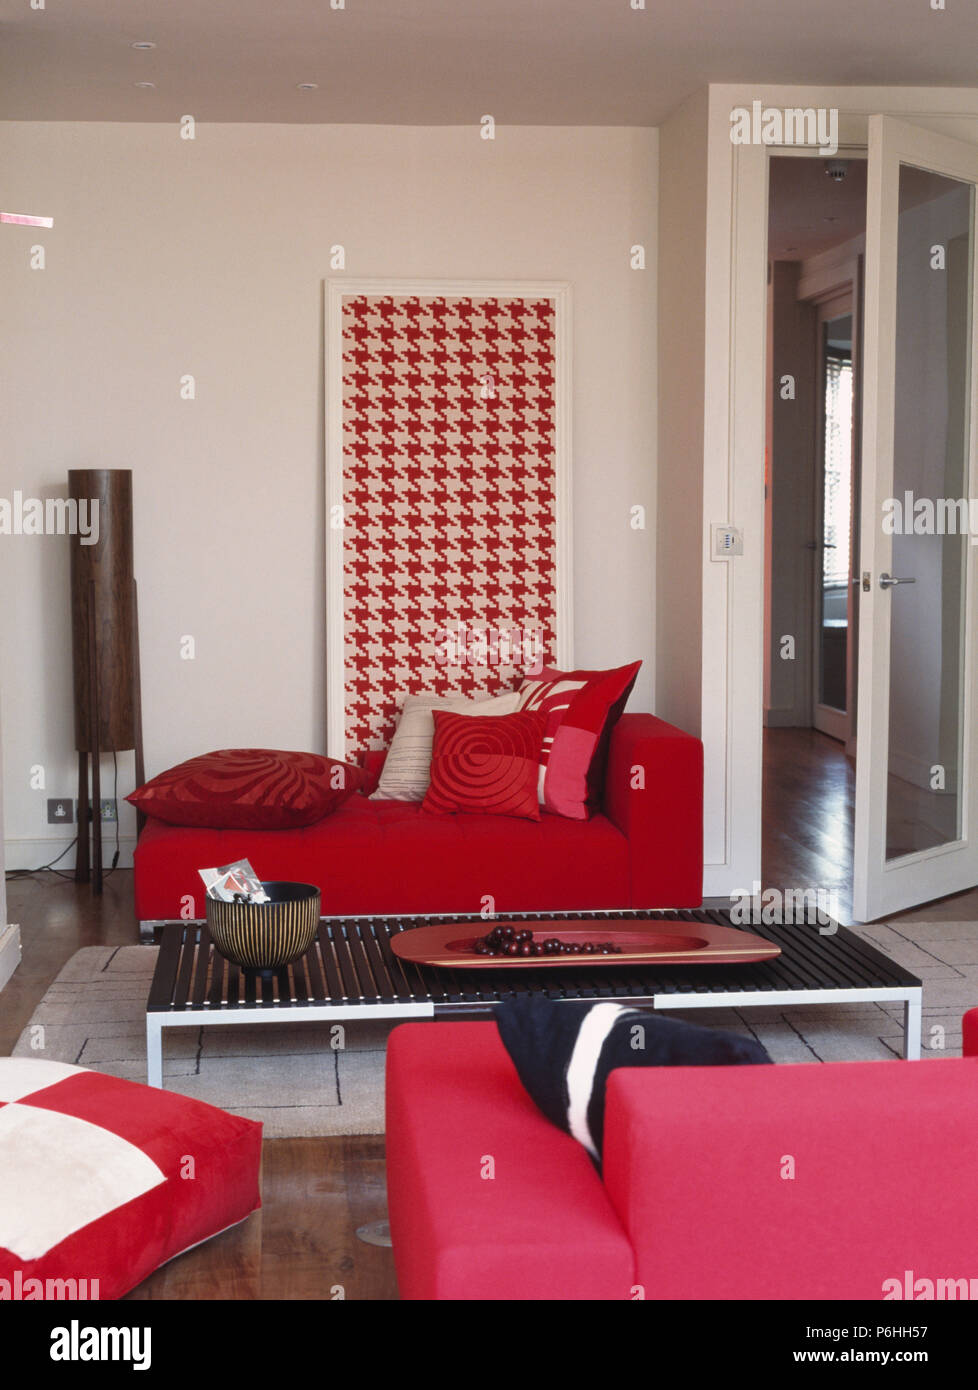 Modellato cuscini rosso su rosso brillante divano nella parte anteriore del grande rosso + bianco hounds-dente immagine in salotto con il caffè nero-tabella Foto Stock